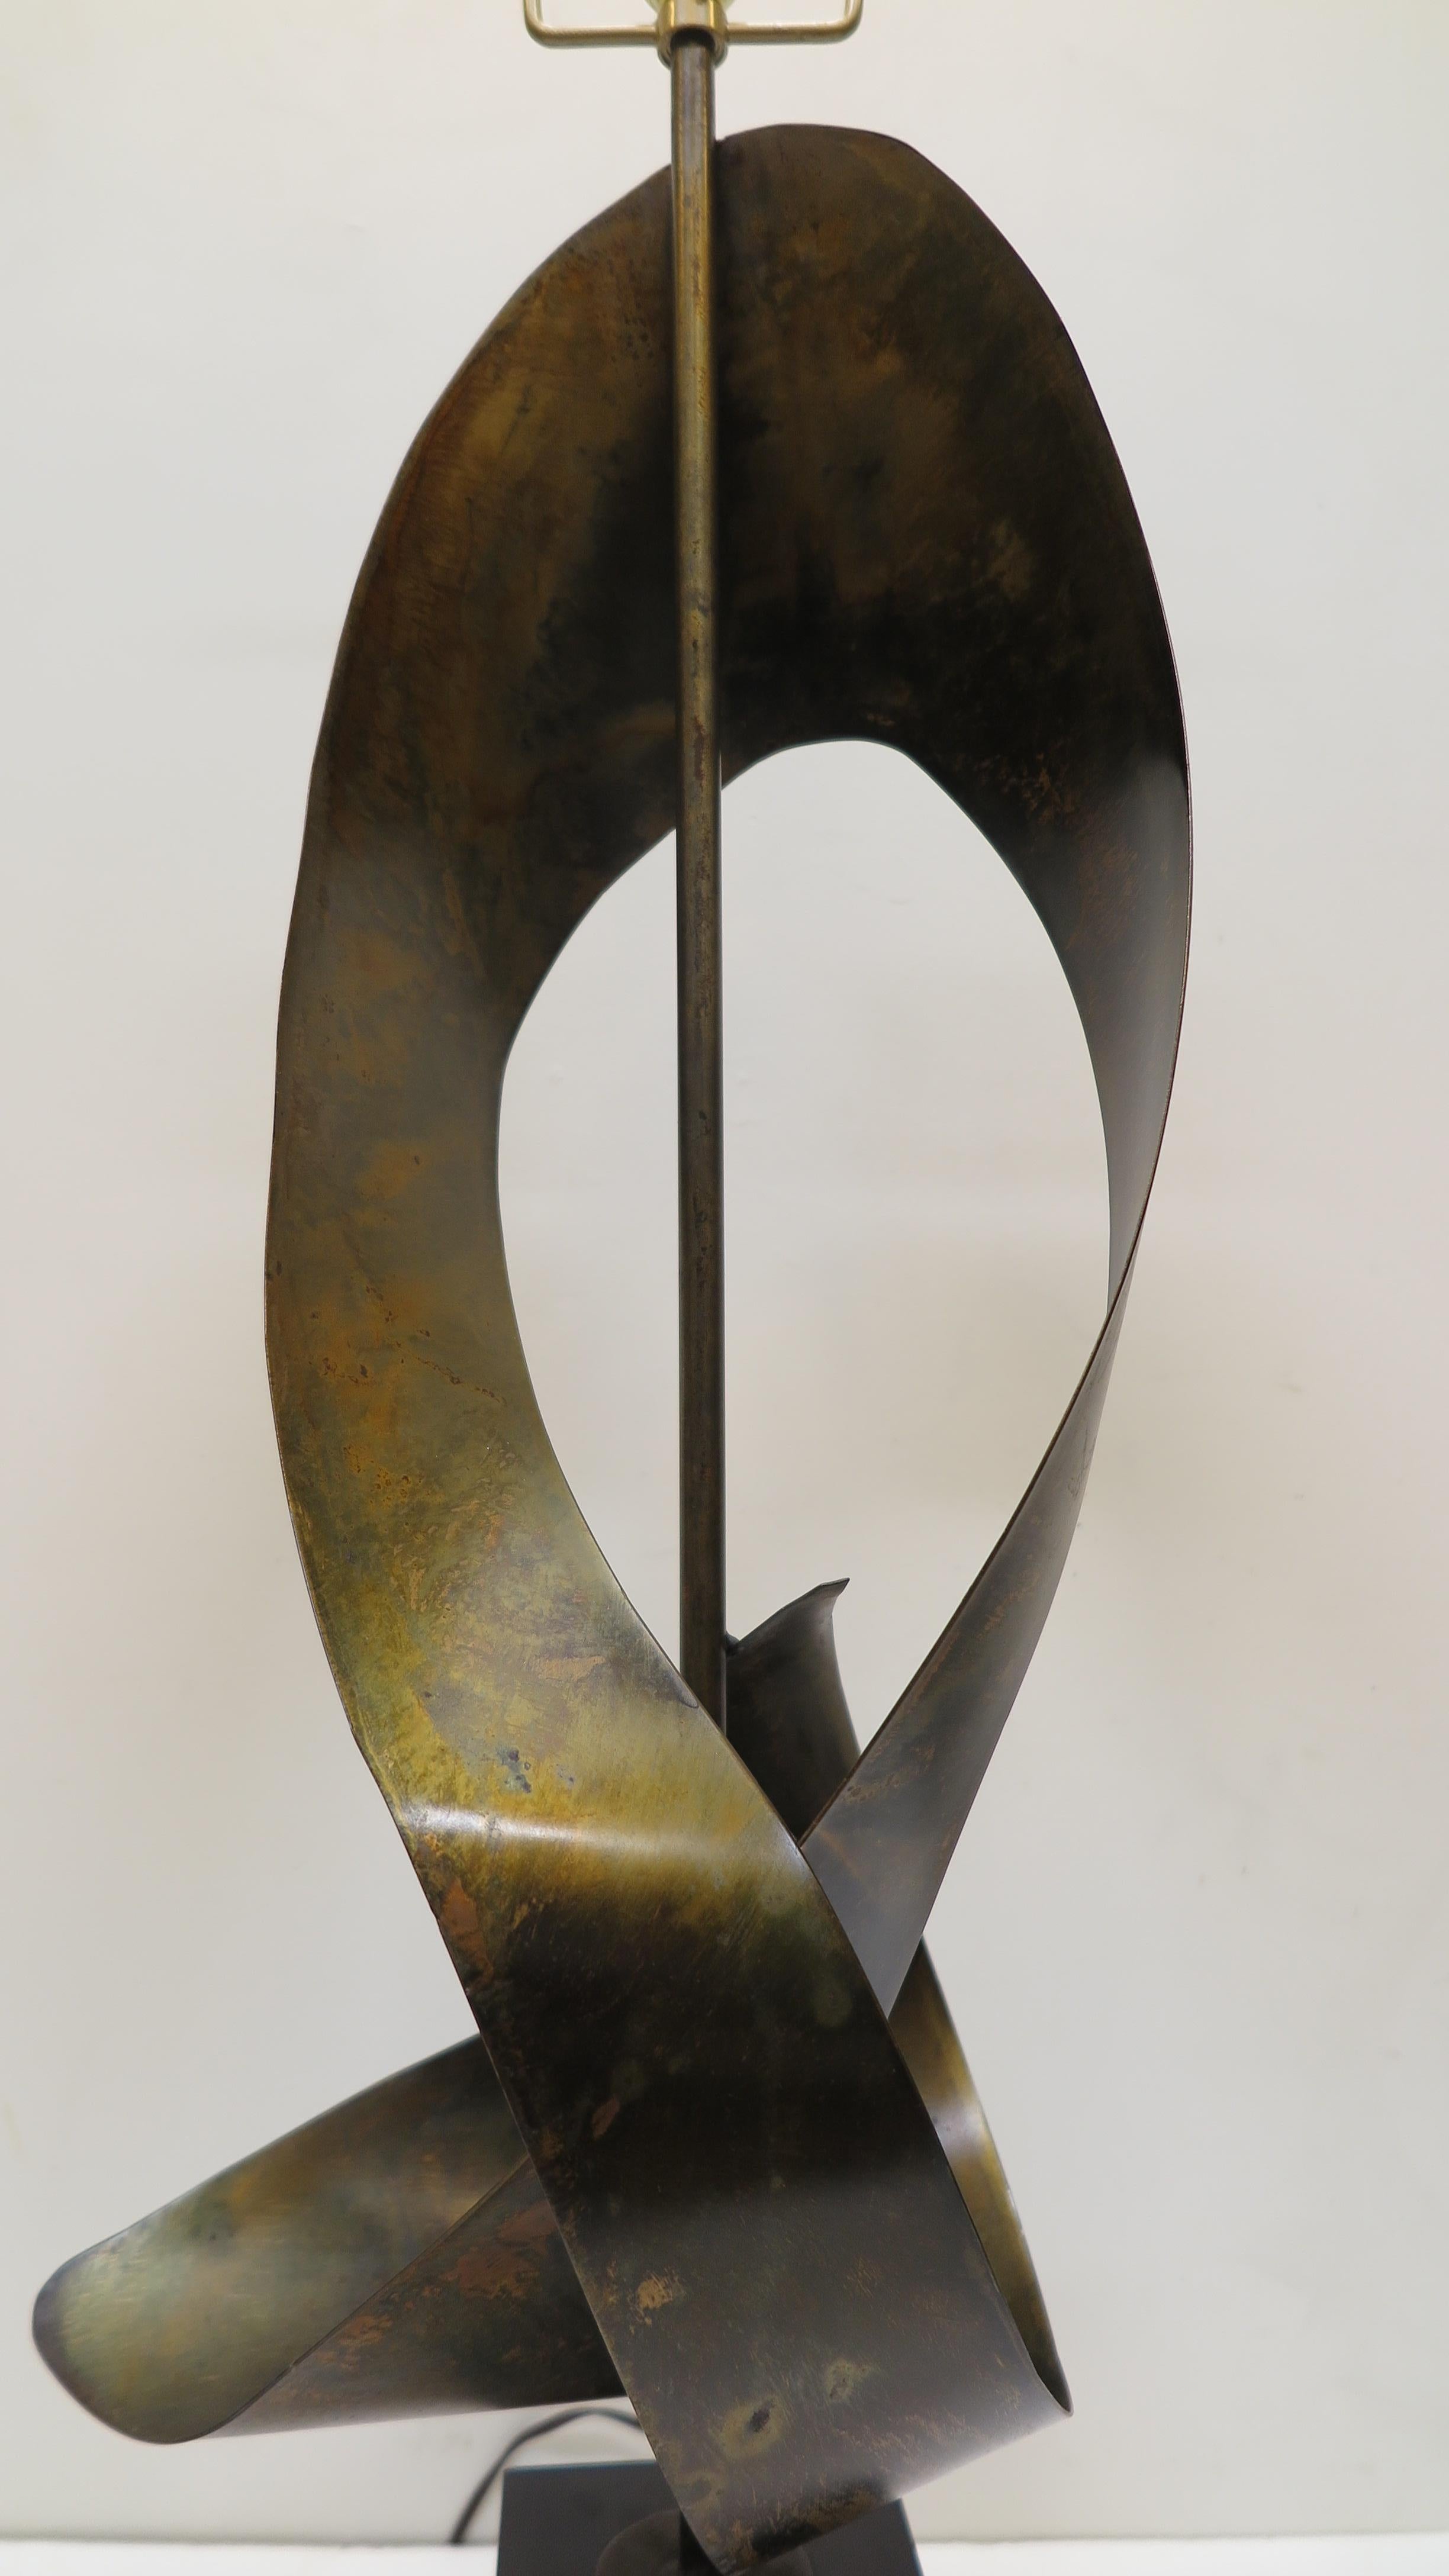 Brutalistische skulpturale Lampe von Richard Barr für Laurel Lamp Company. Patinierter, bronzierter Stahl, der in eine abstrakte, bandartige Form gebracht wurde. Montiert auf schwarzem Stahlständer. Wunderbar moderne skulpturale Kunst, die als Lampe